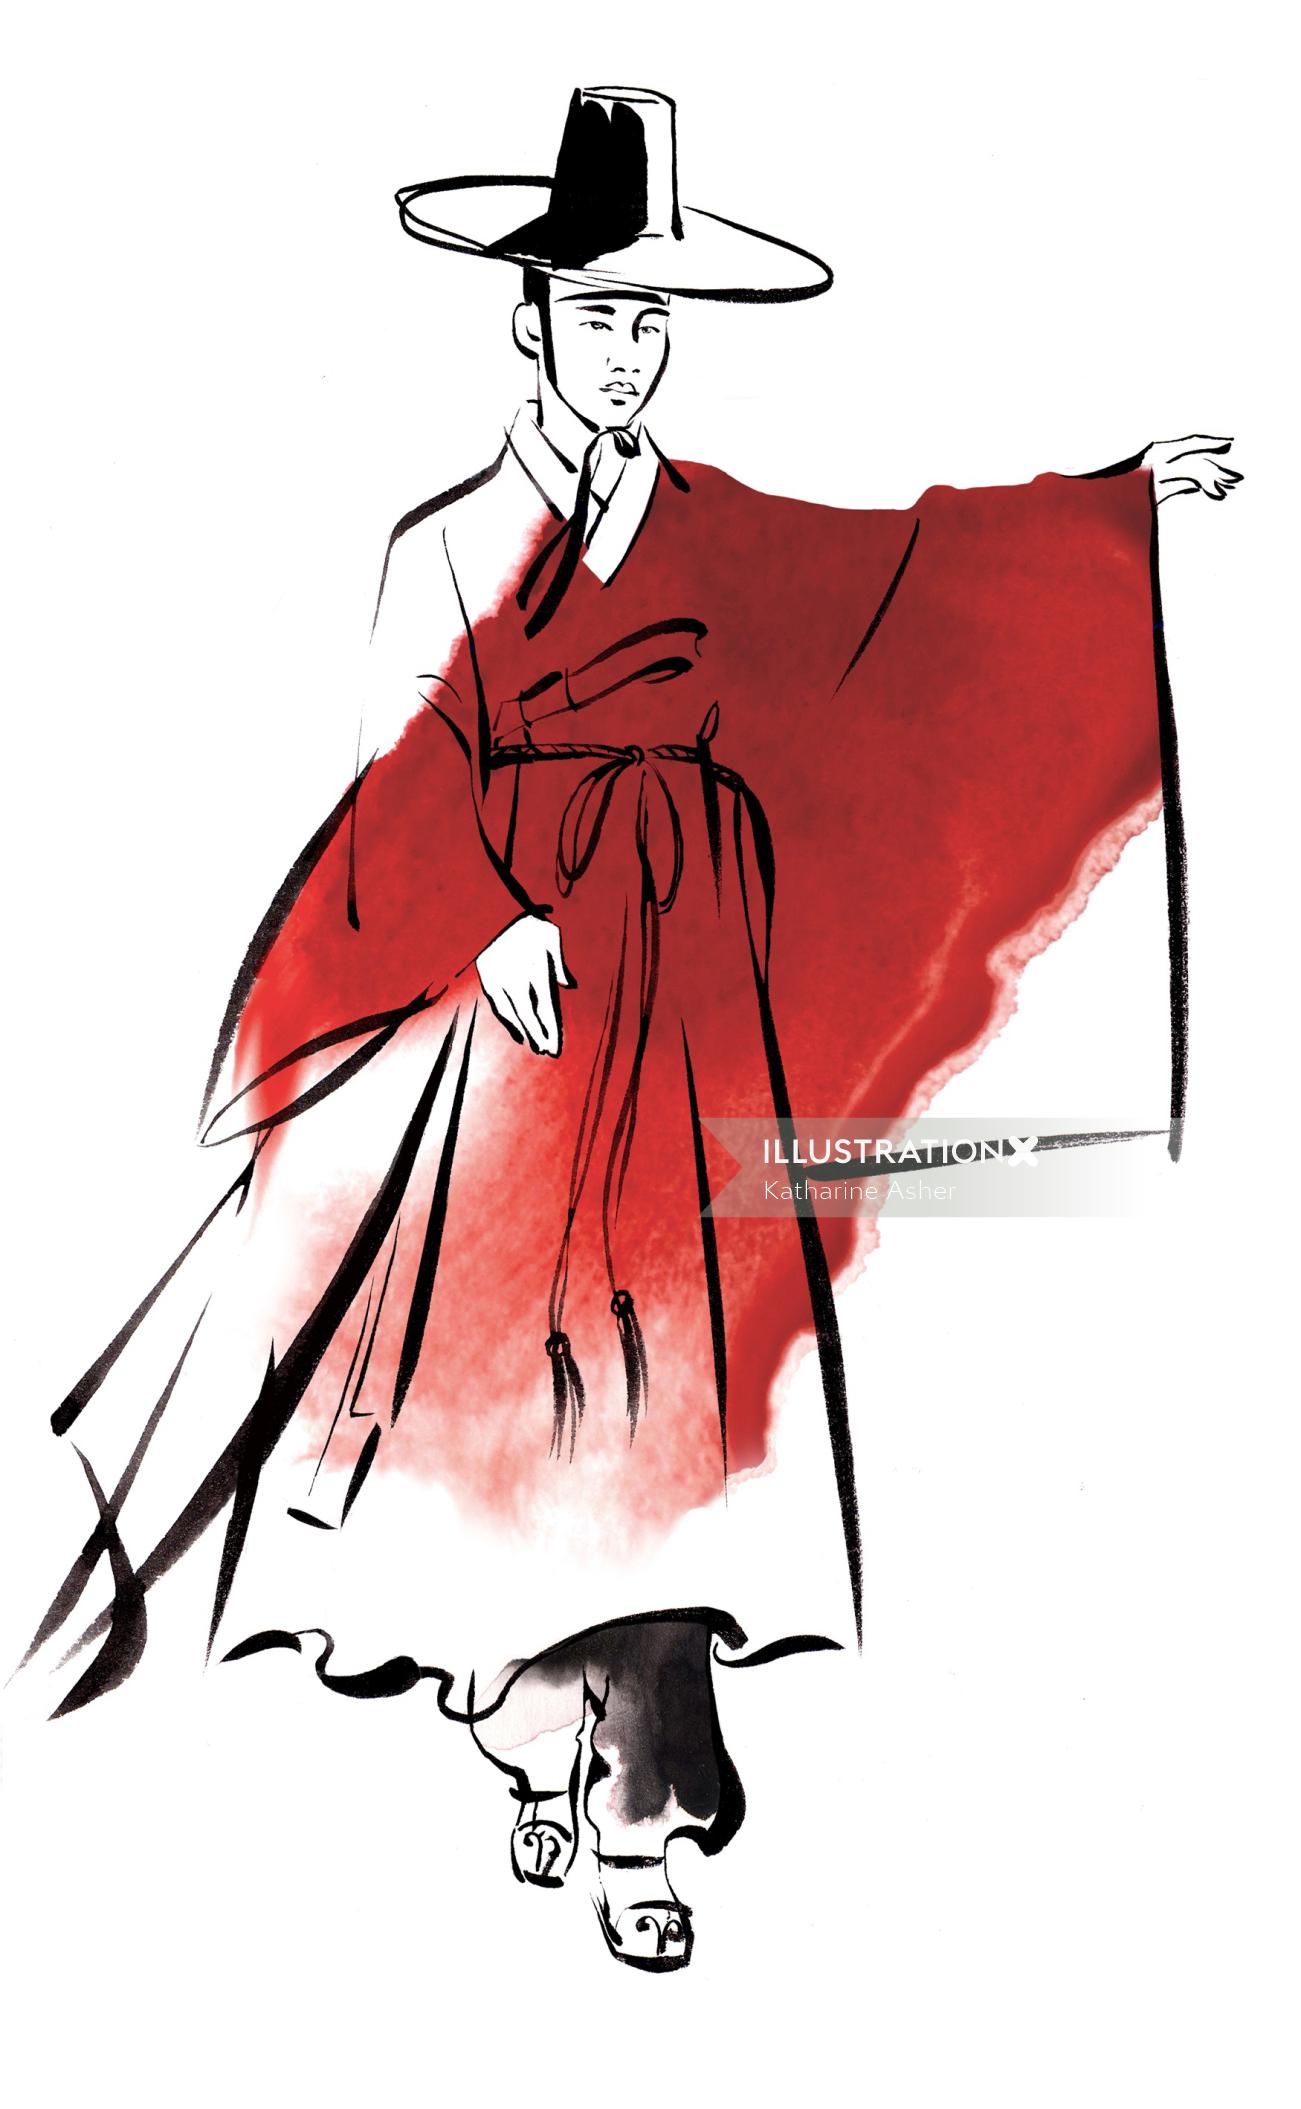 男性韩国传统服饰插图，Katharine Asher设计